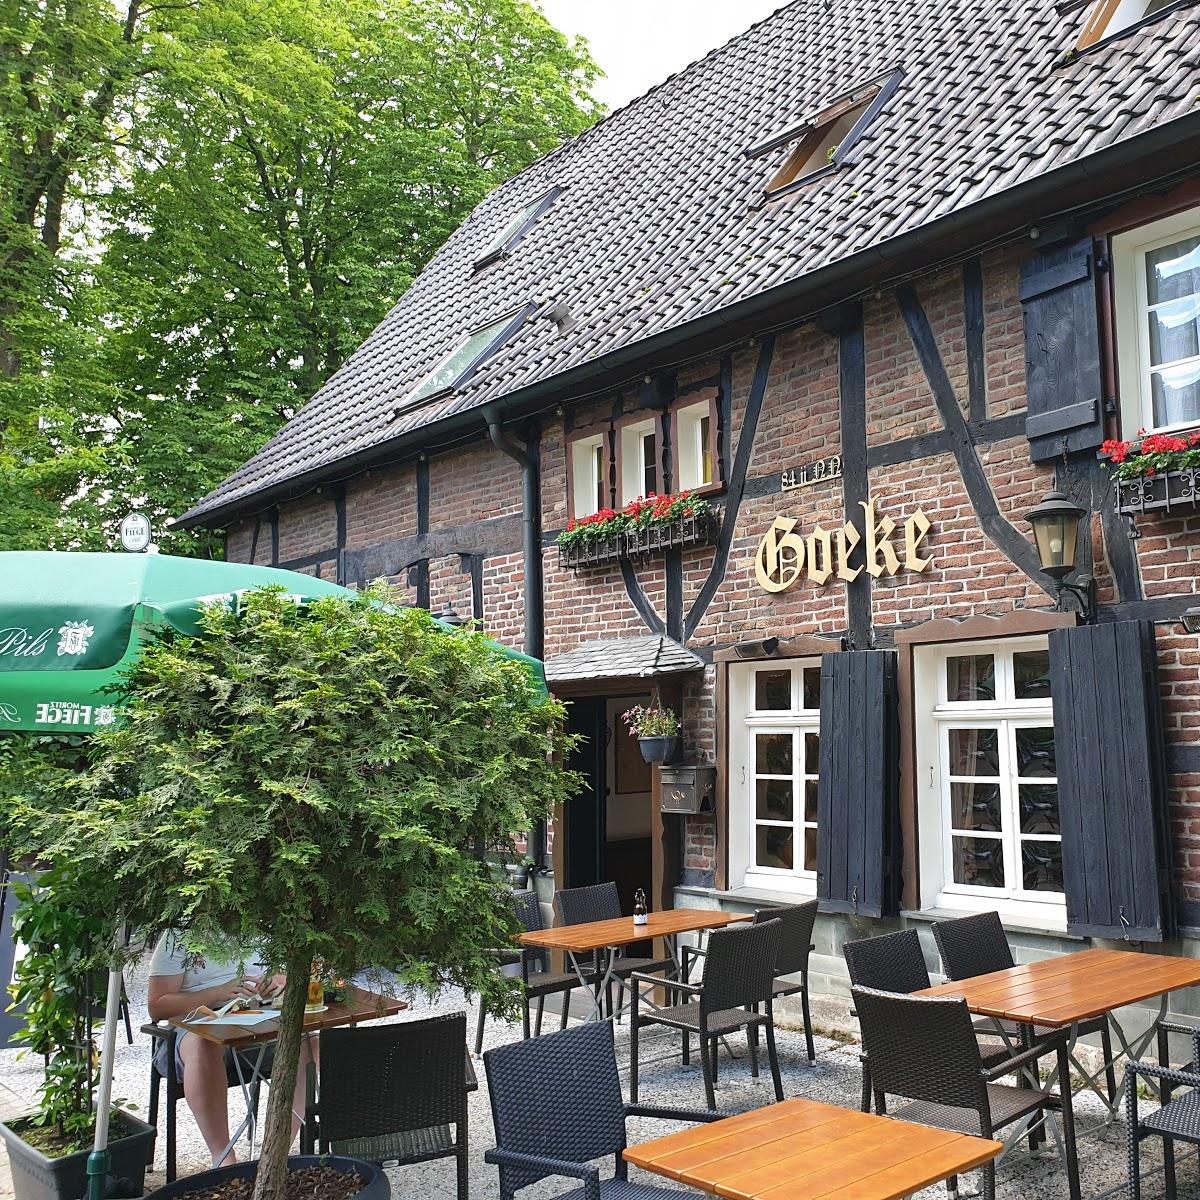 Restaurant "Gasthaus Goeke BO Tippelsberg" in  Bochum